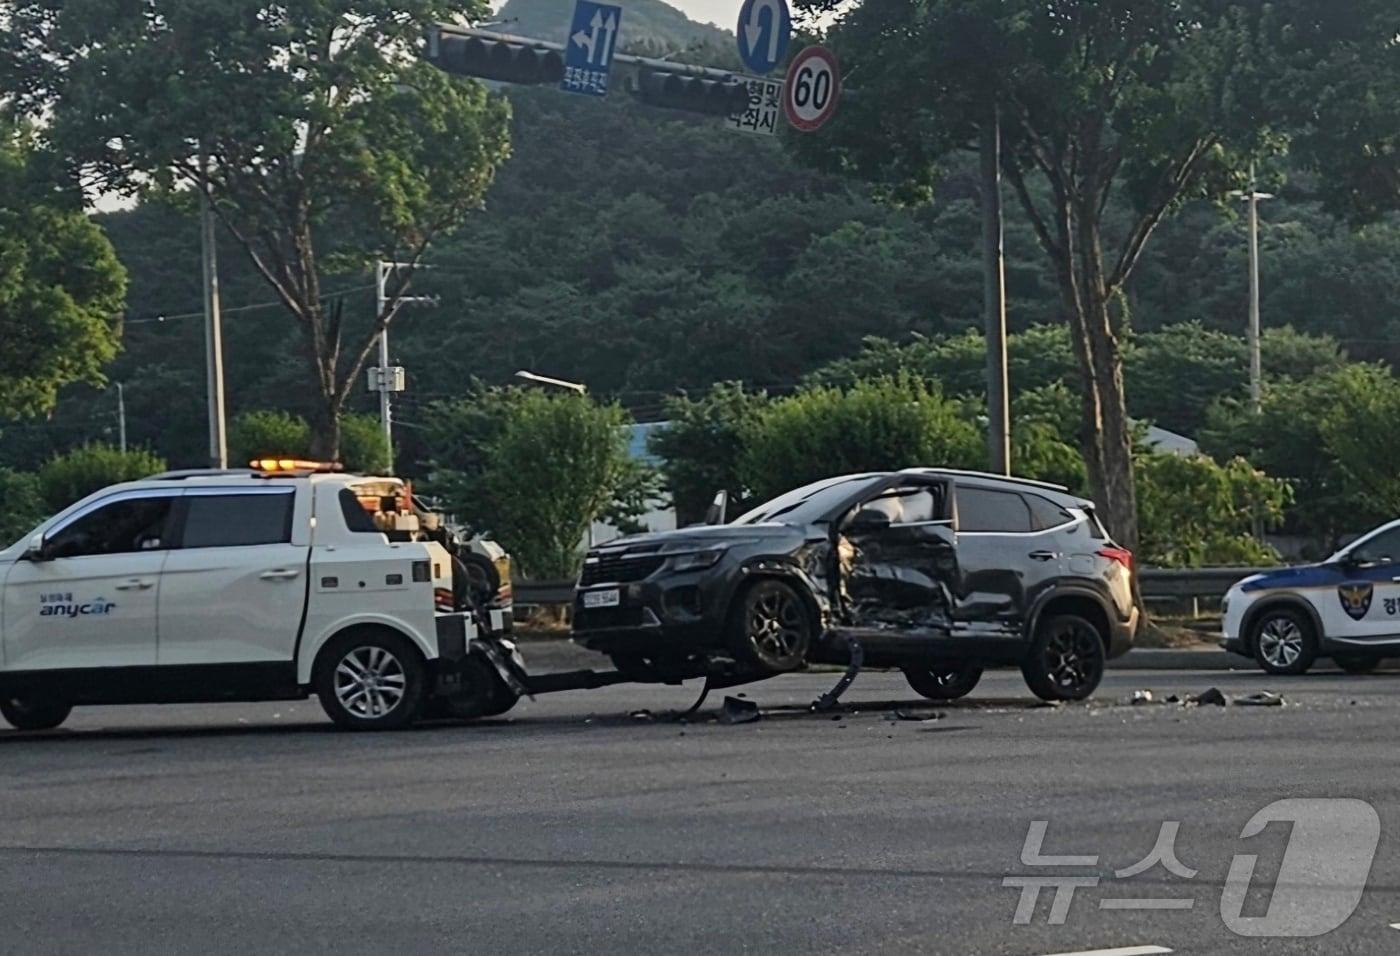 11일 오후 6시13분께 대전 동구 낭월동의 한 도로에서 직진하는 SUV가 좌회전하는 SUV를 들이받아 운전자 2명이 경상을 입었다. ⓒ 뉴스1 백운석 기자 